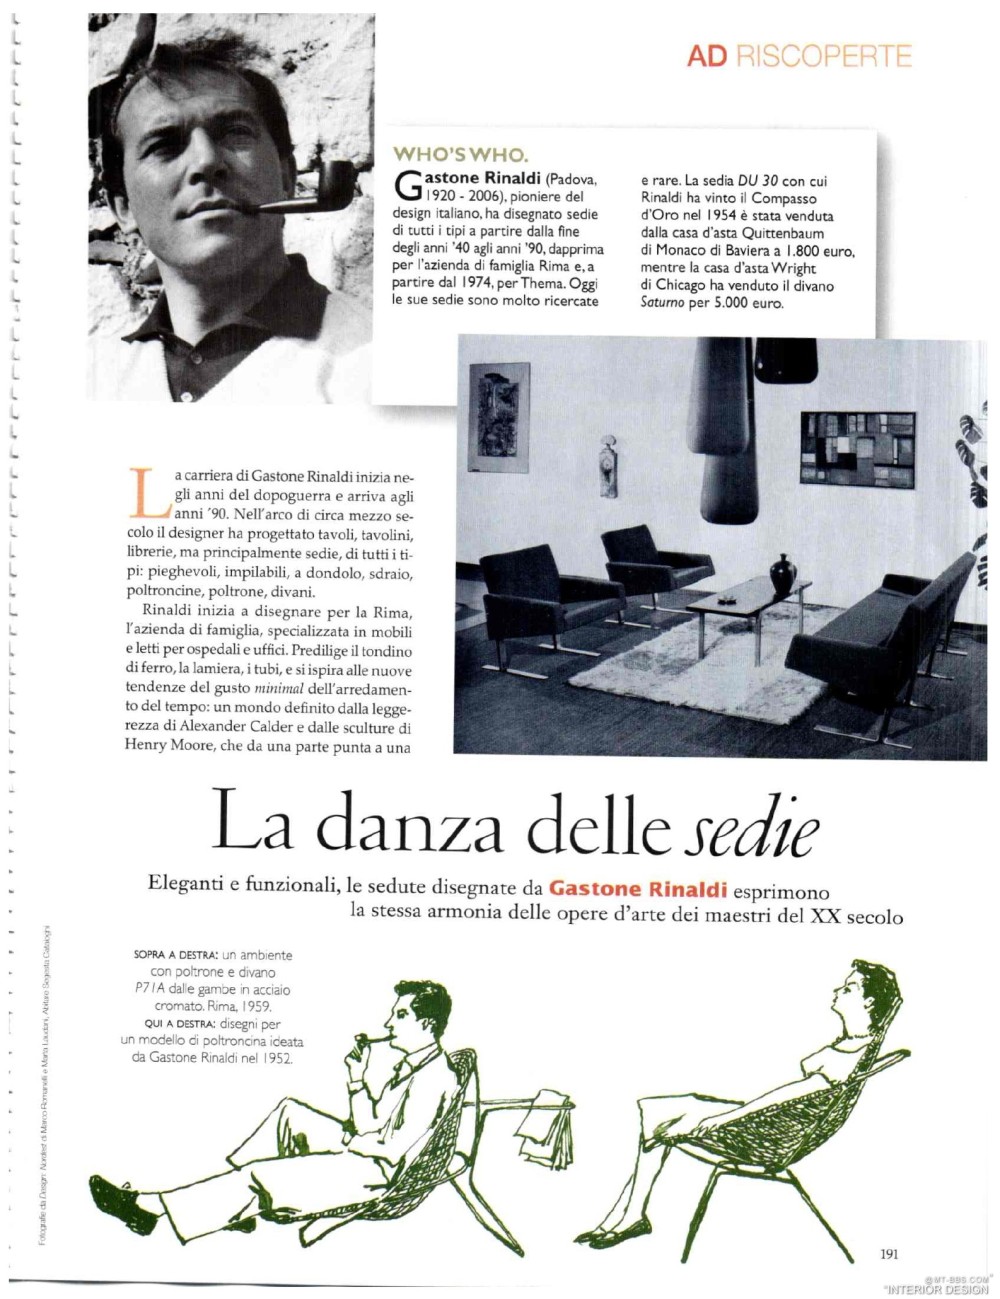 意大利AD 杂志 2012年全年JPG高清版本 全免（上传完毕）_0191.jpg